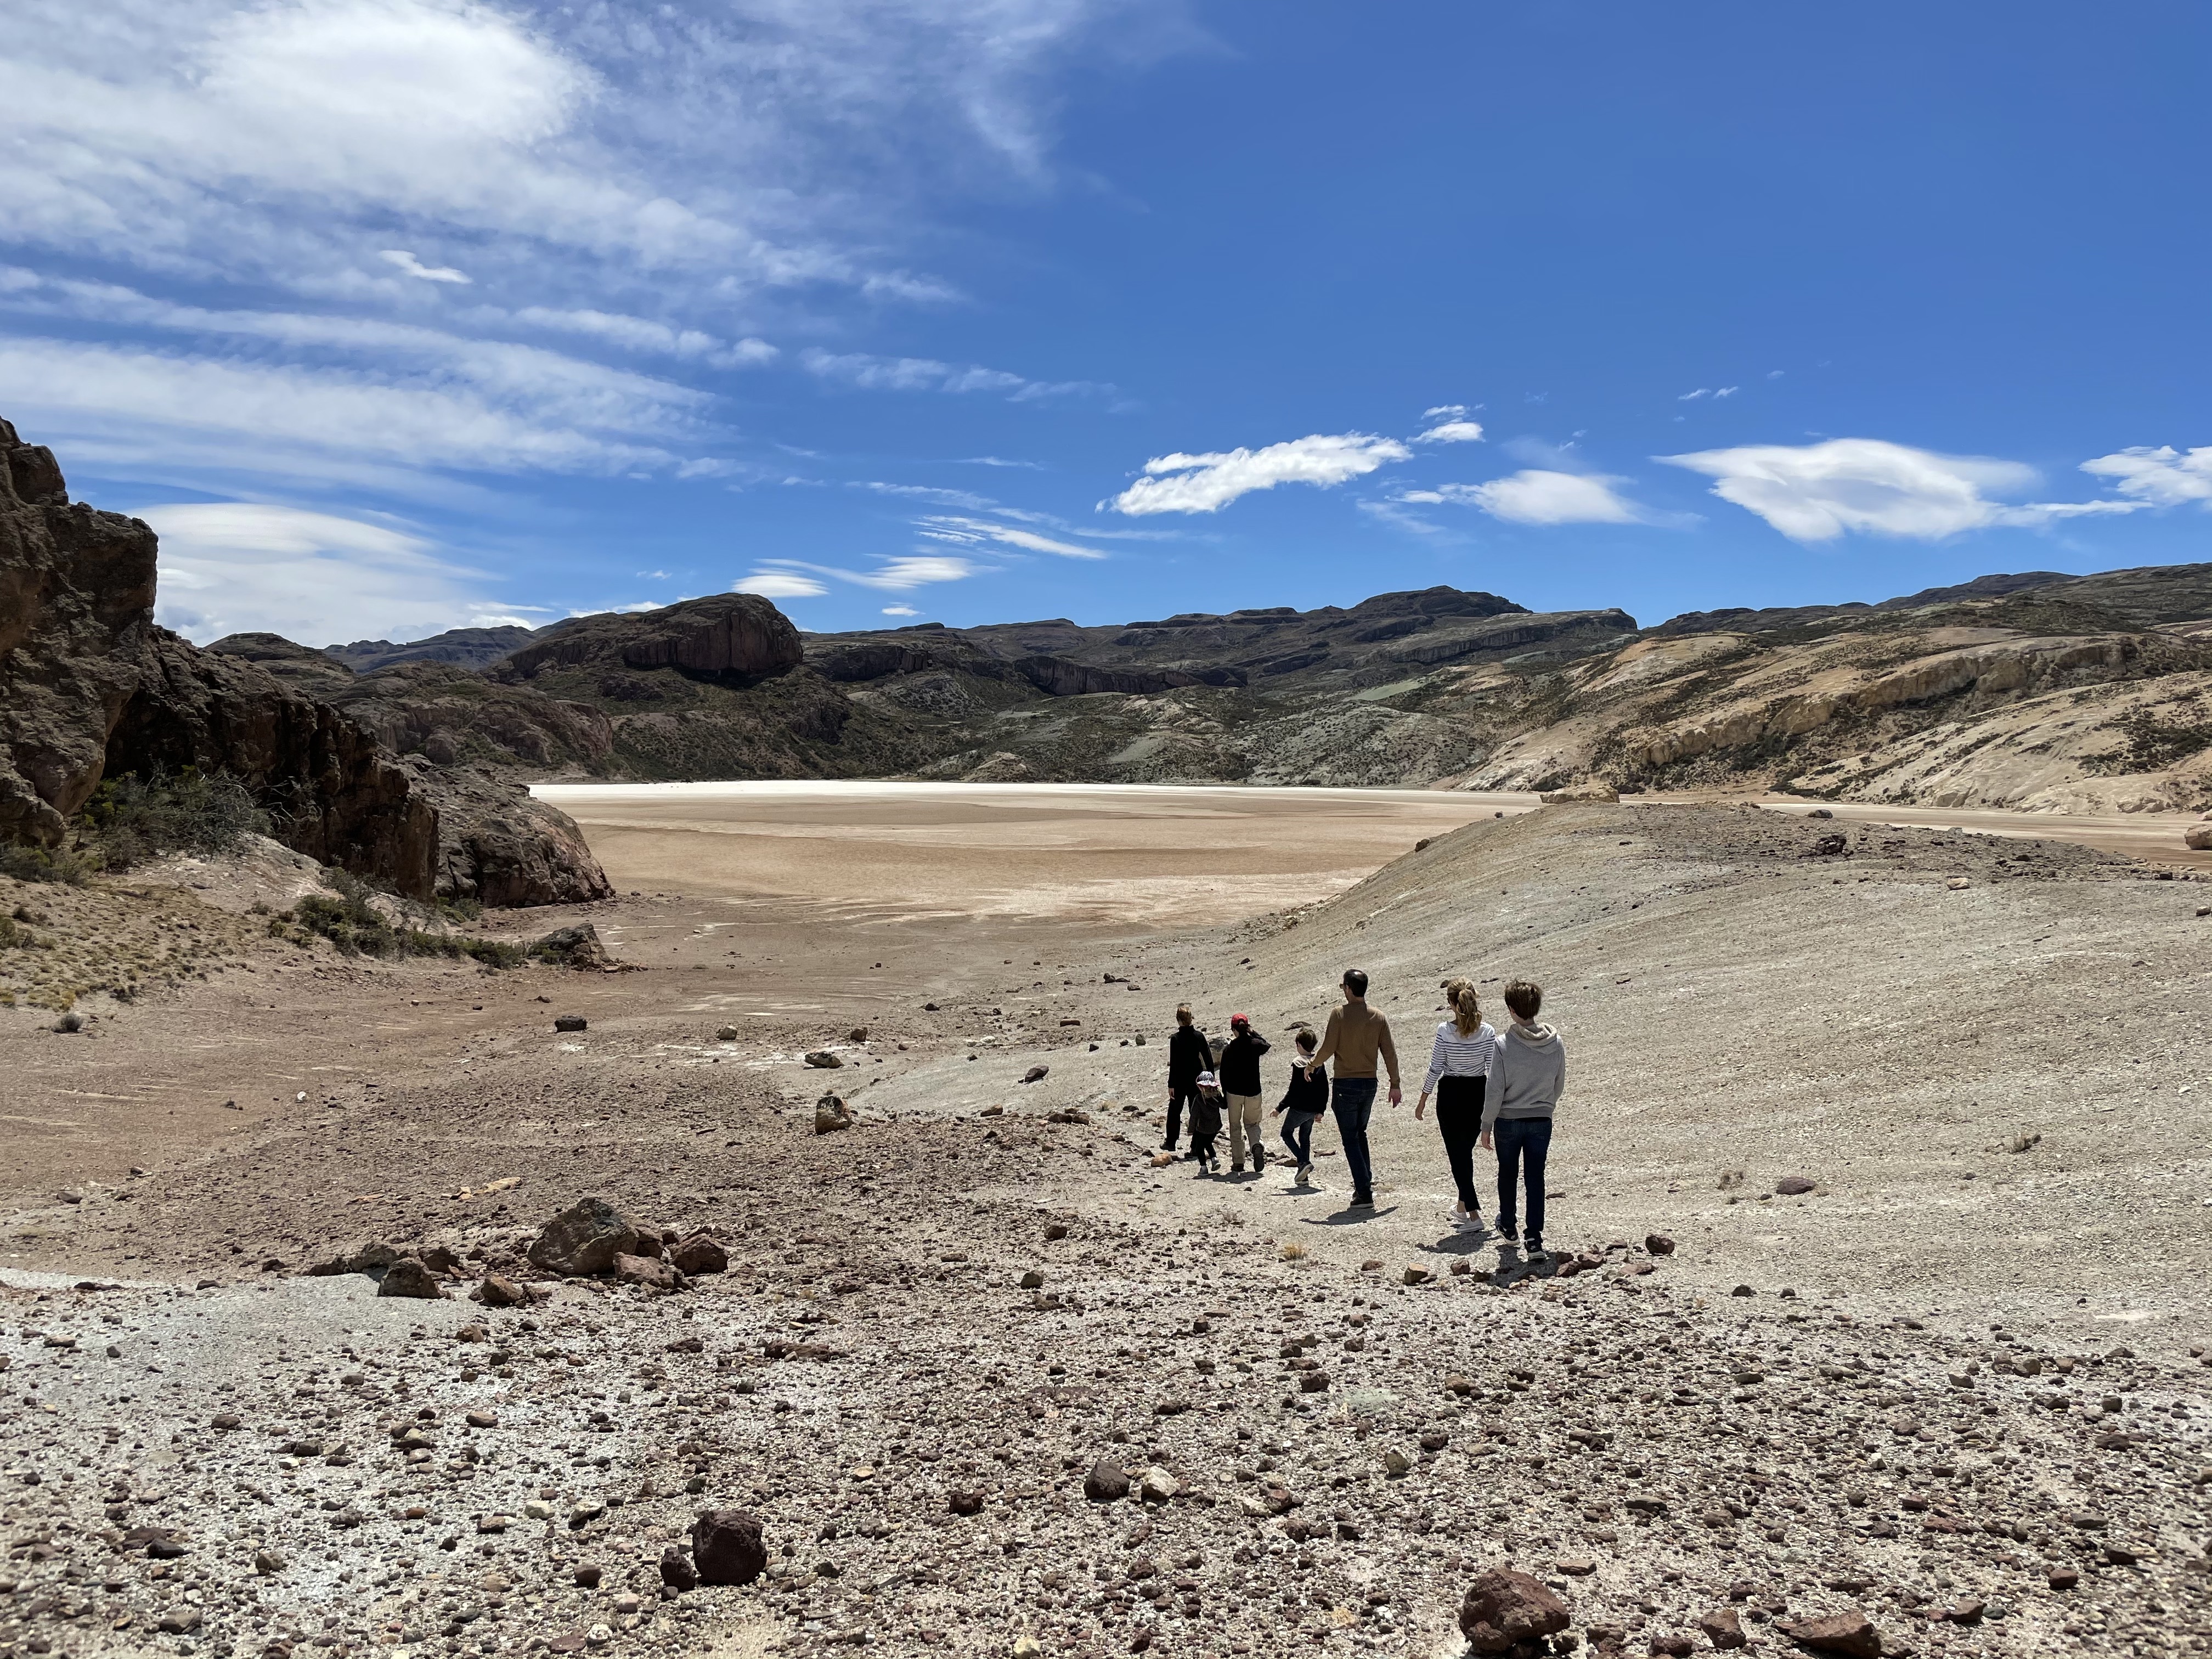 La zona es la base ideal para una variedad de paseos por la cordillera y precordillera de los Andes a través de las praderas y bosques bordeando la frontera con Chile